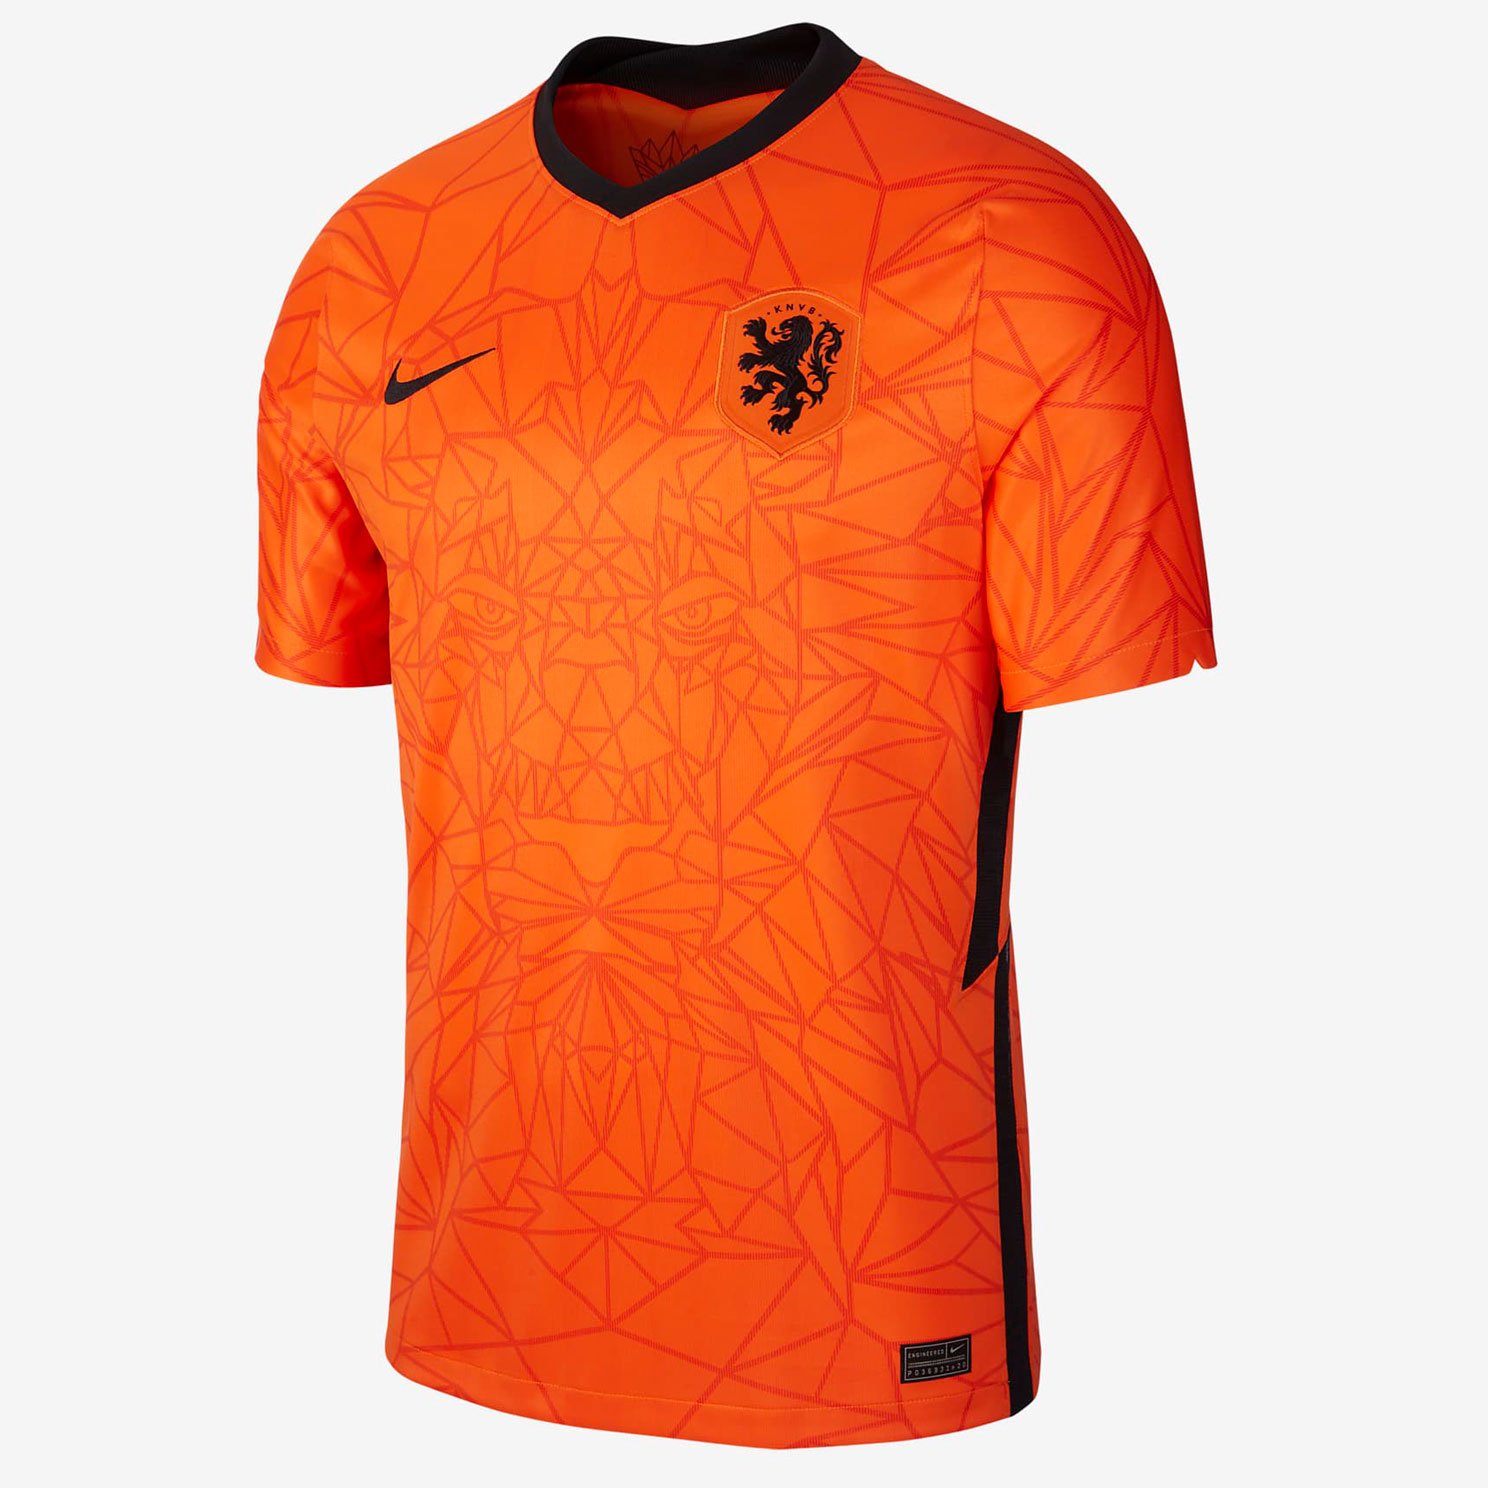 Домашняя игровая футболка Nike cборной Нидерландов